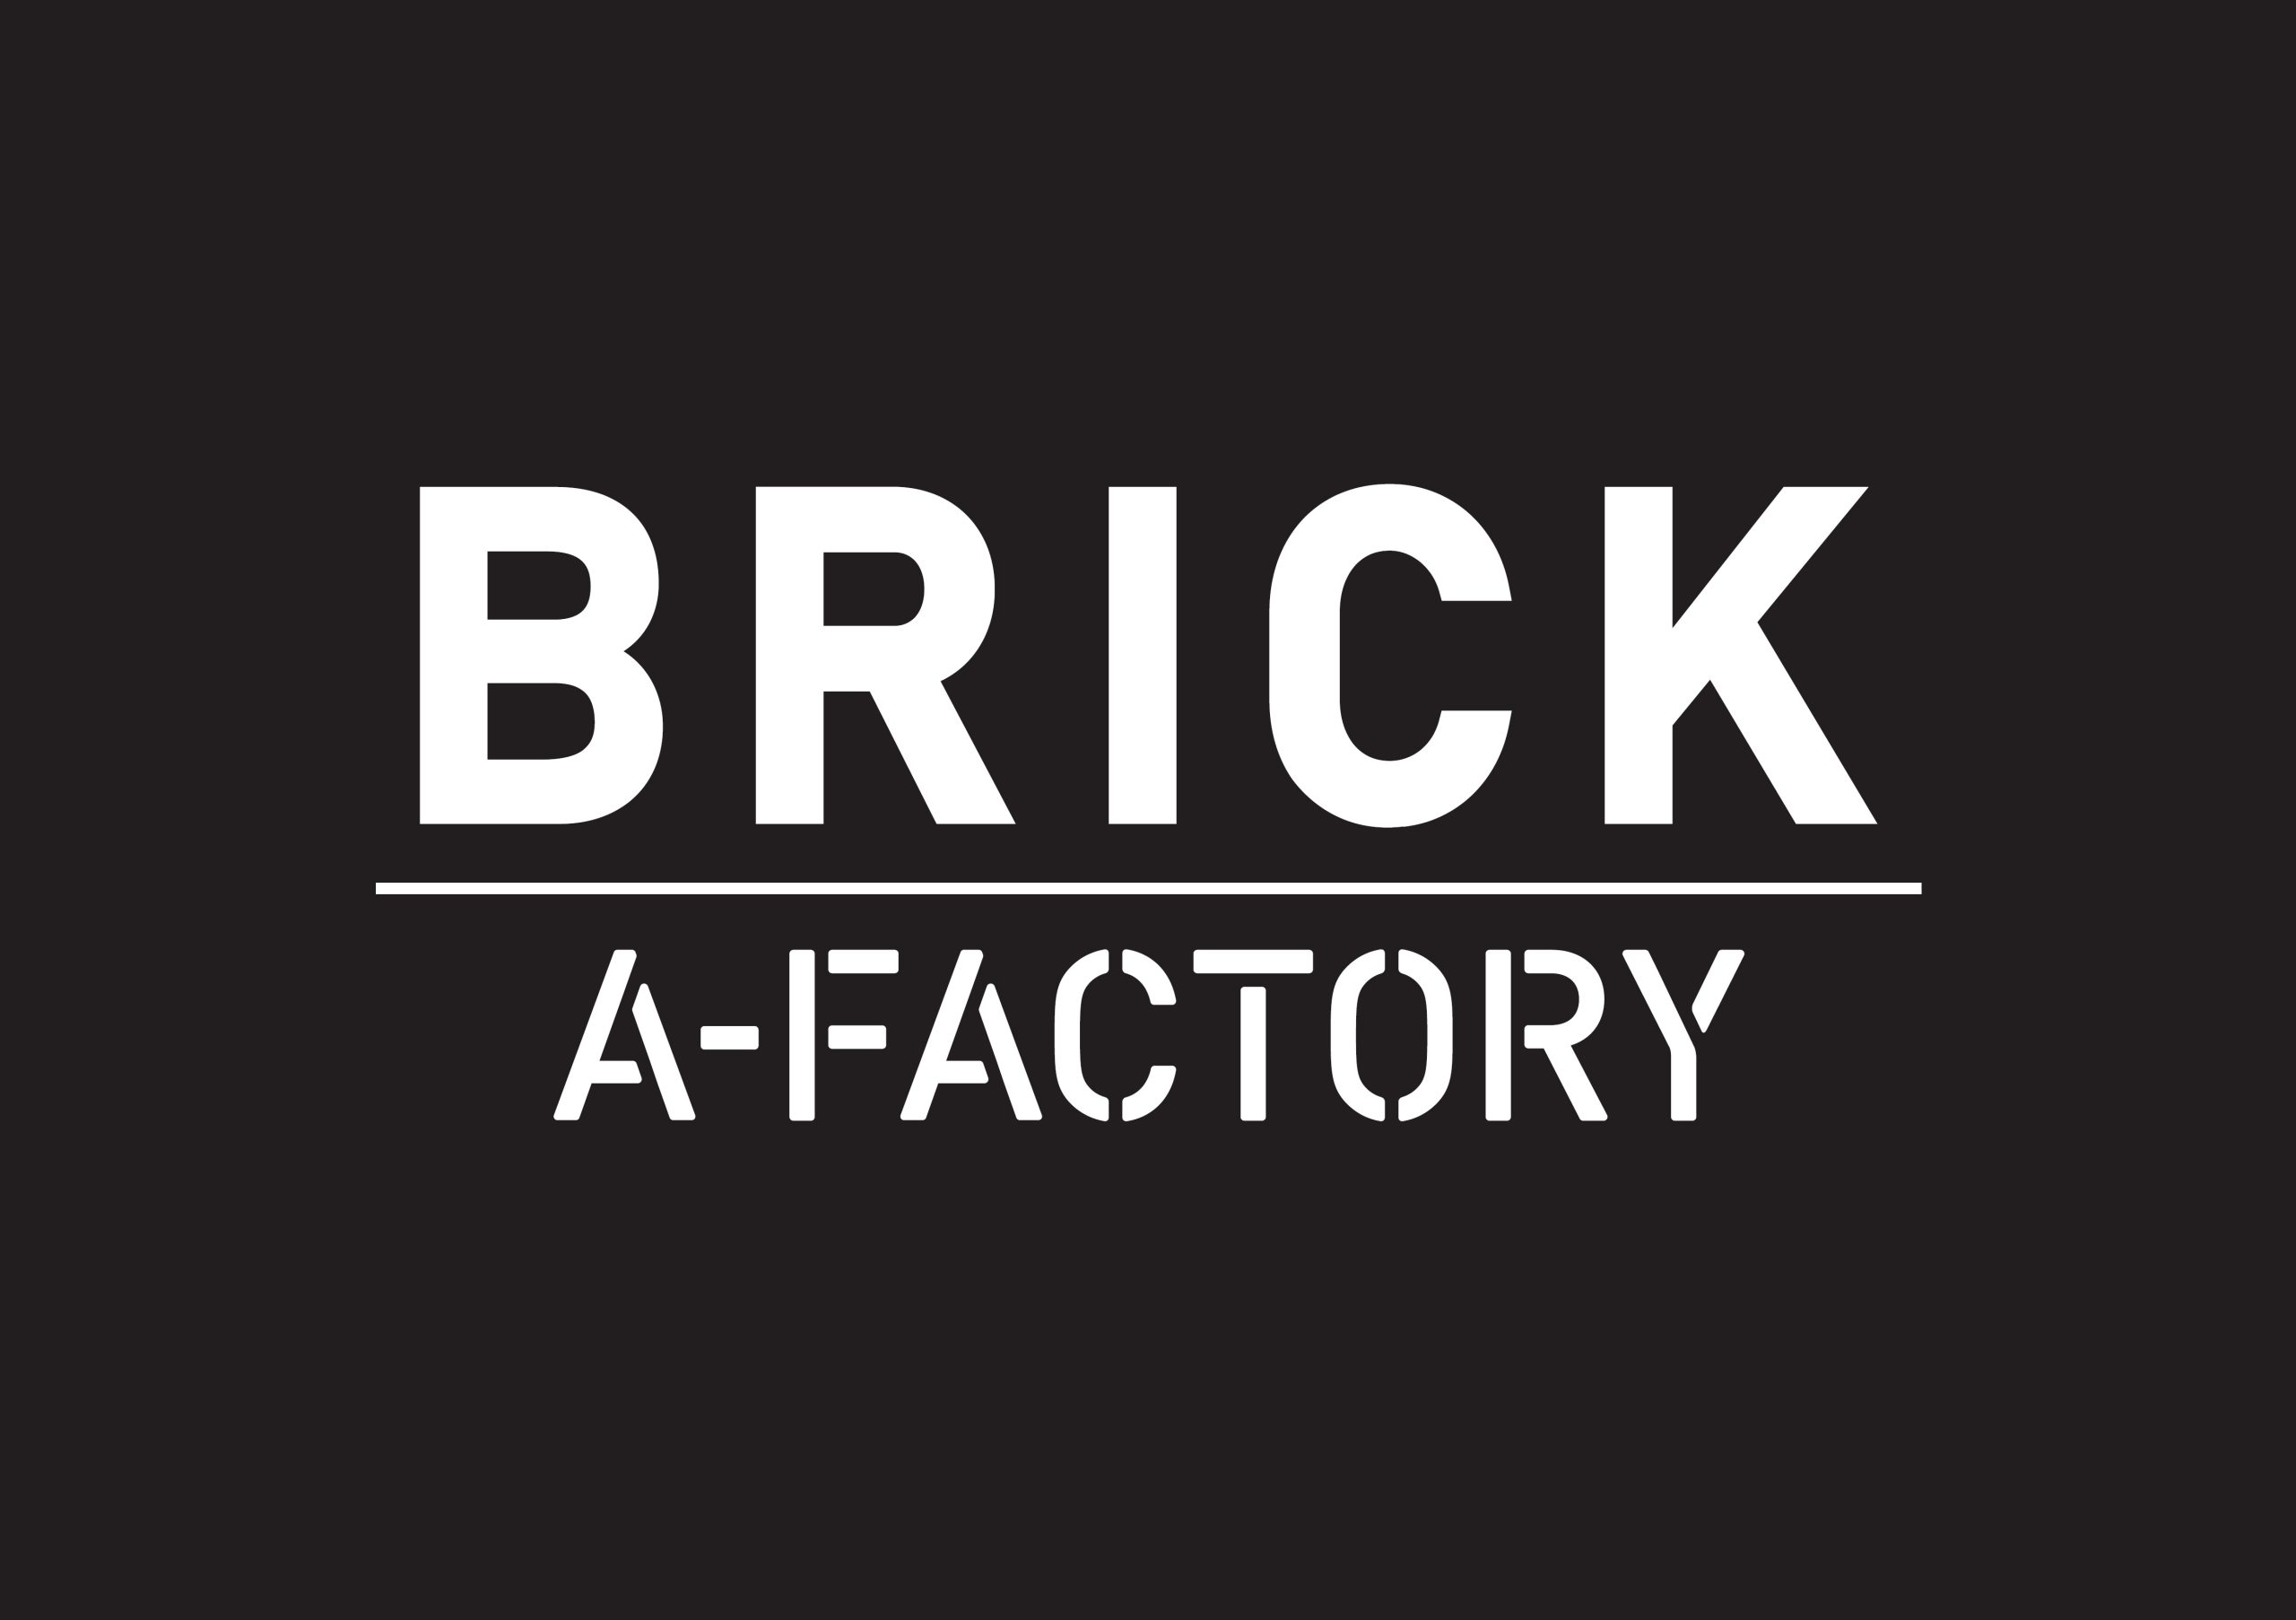 BRICK A-FACTORY